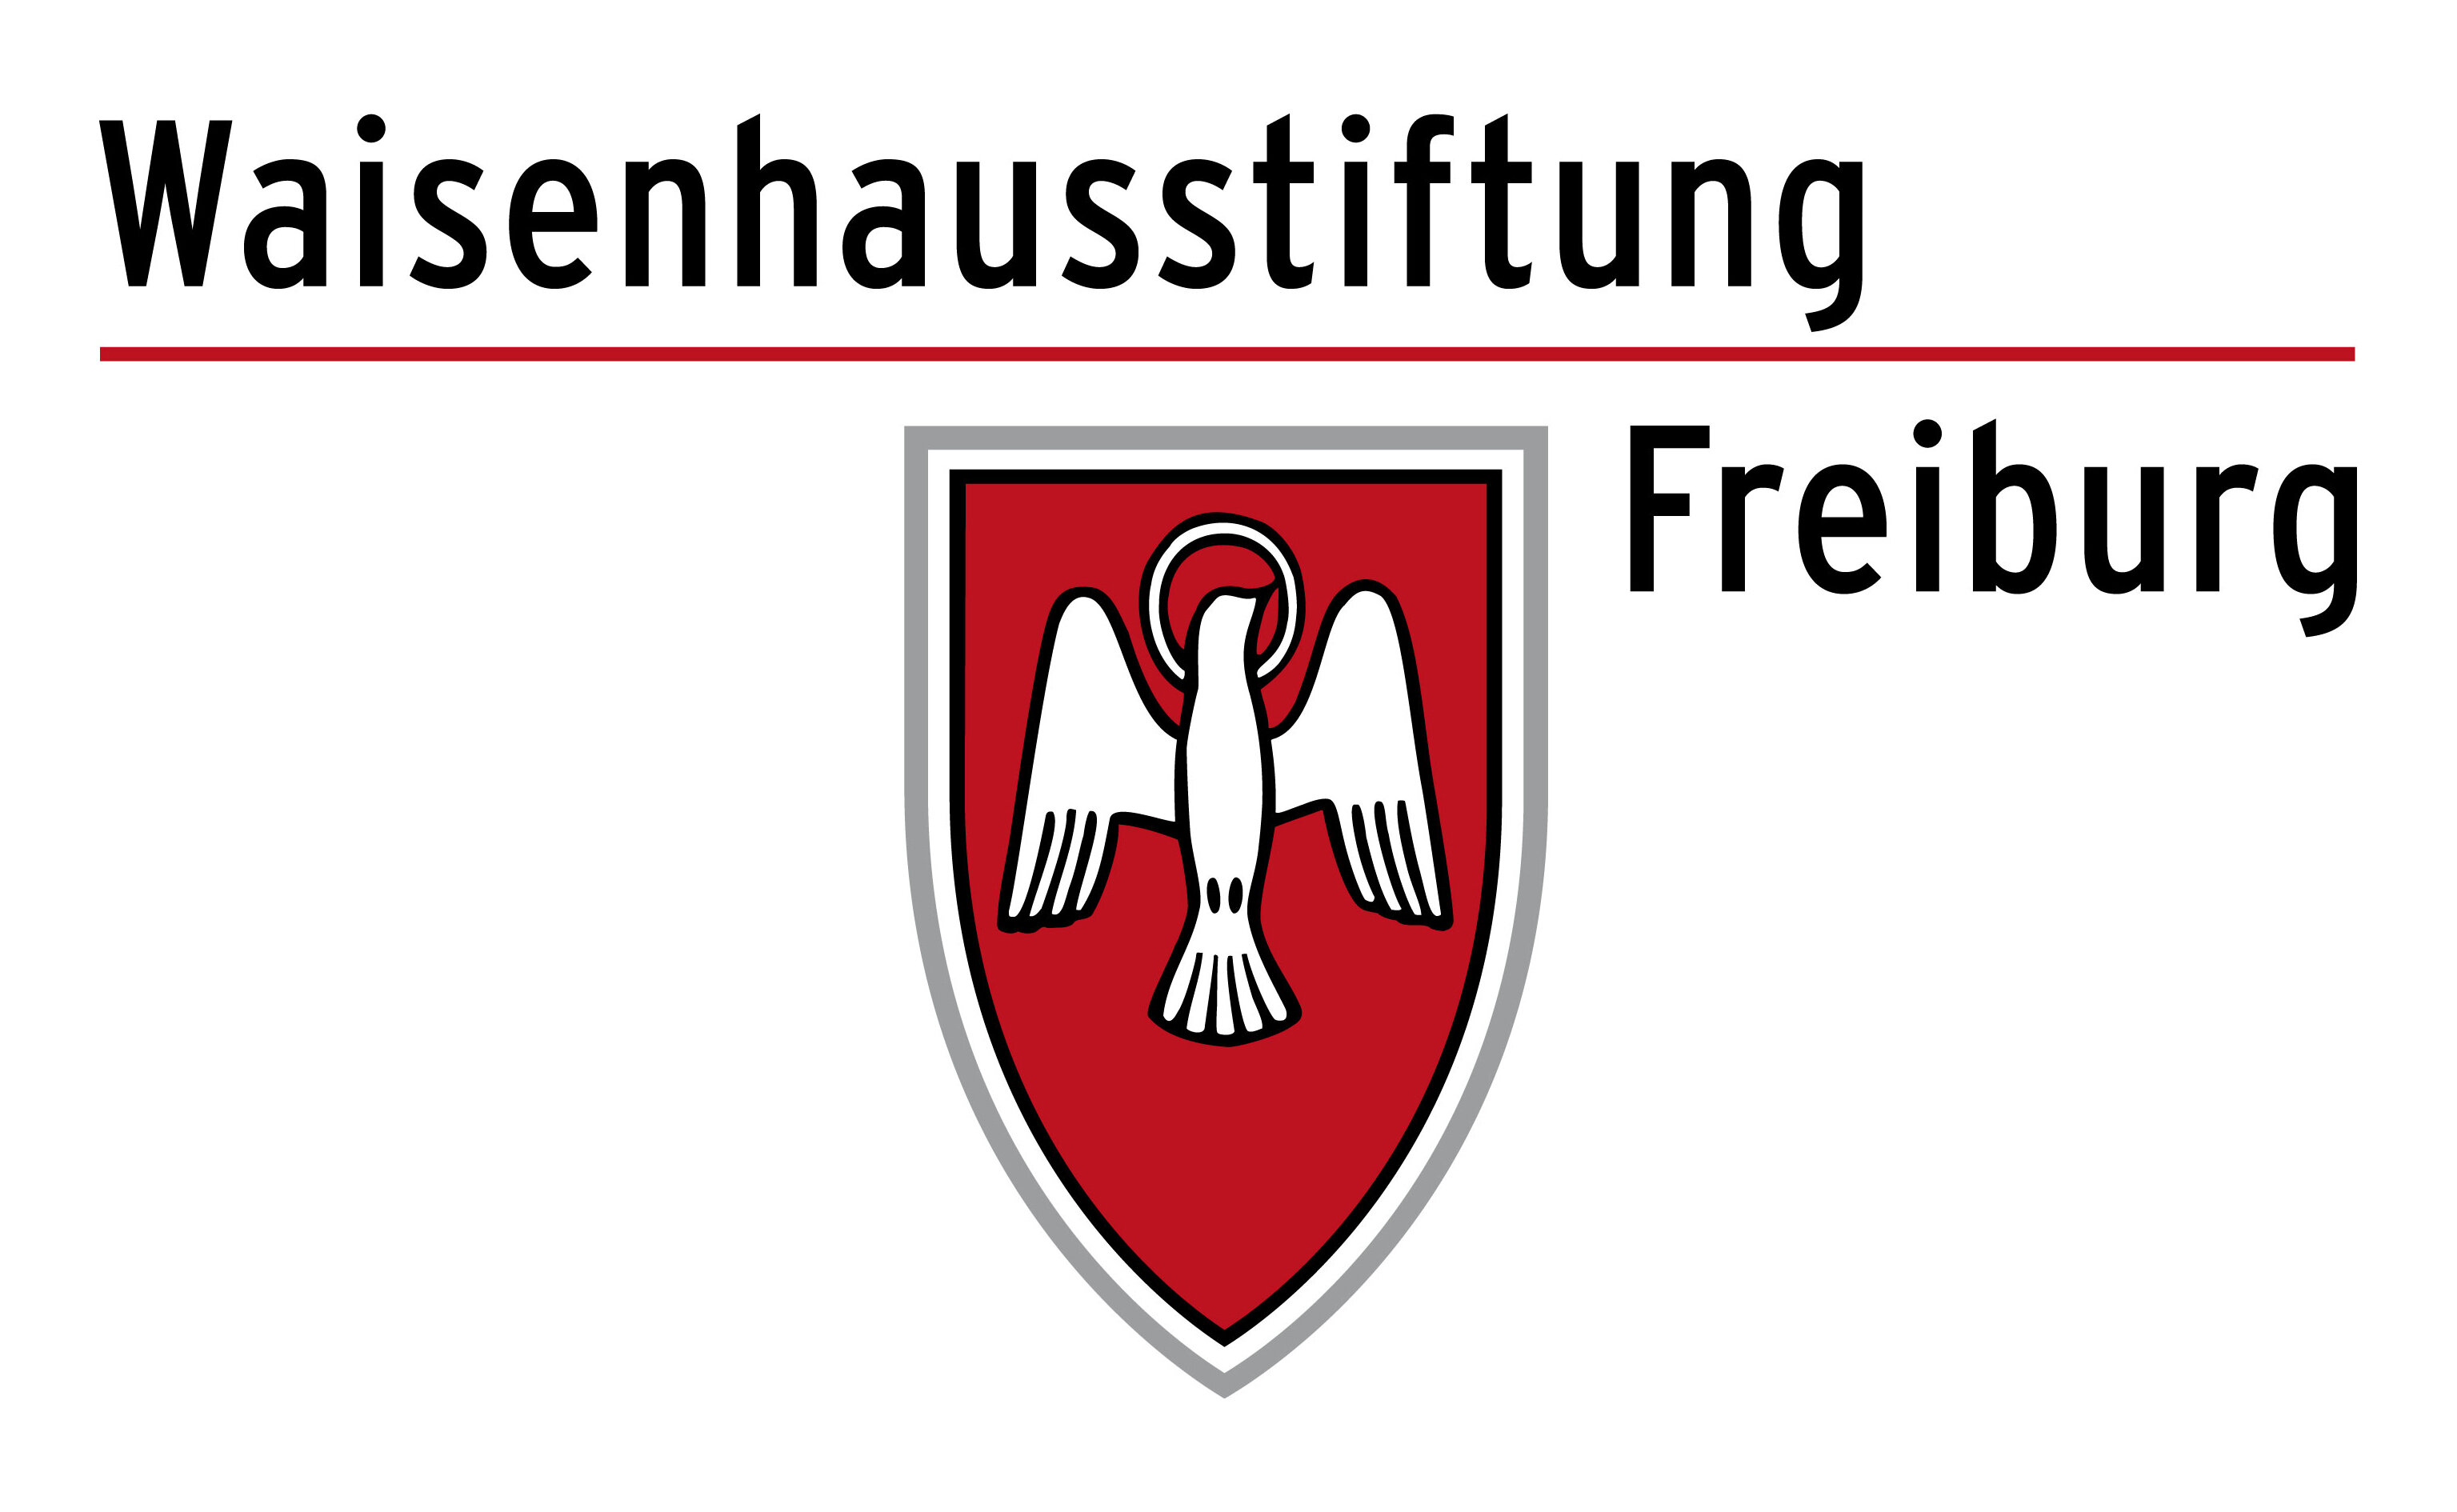 Waisenhausstiftung Freiburg